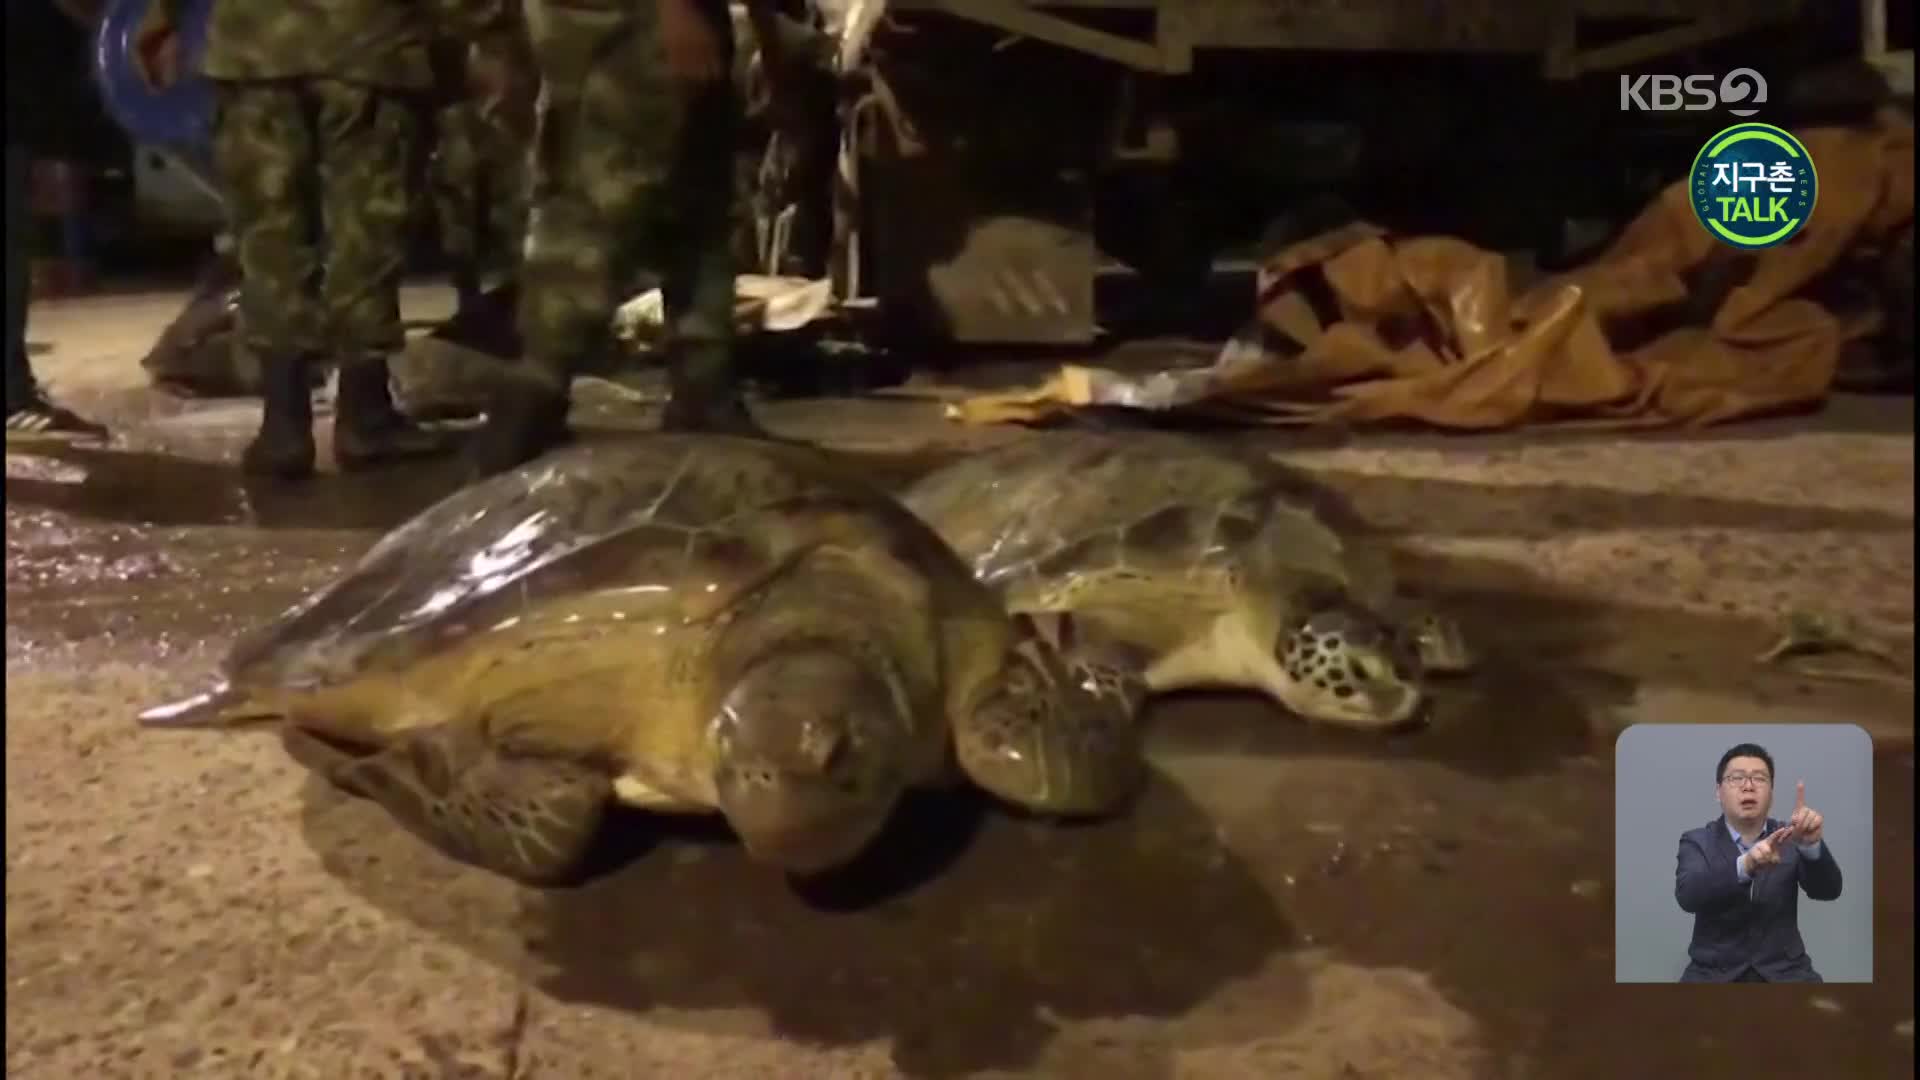 [지구촌 Talk] 밀거래 현장서 구조된 거북 31마리, 바다로 돌아가